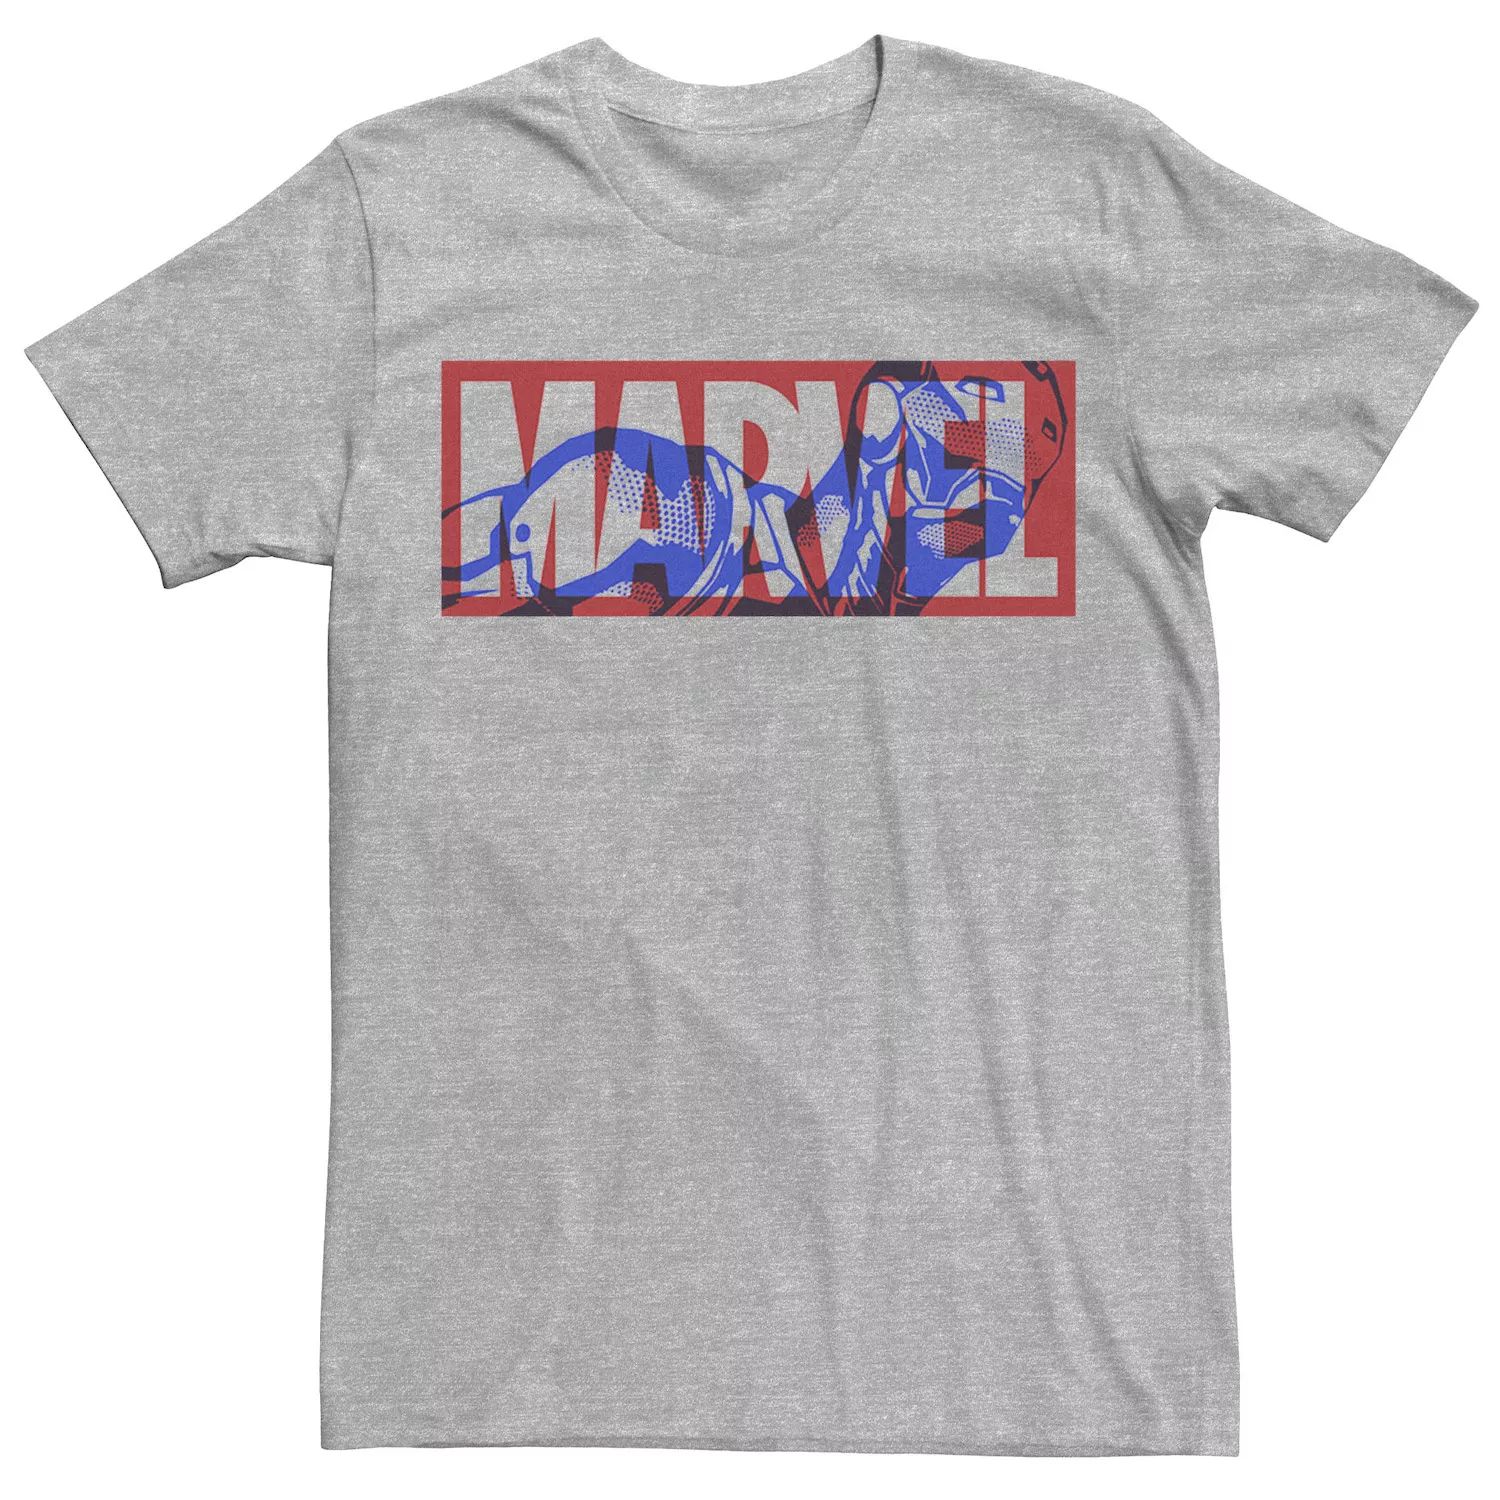 мужская классическая футболка с графическим логотипом marvel Мужская большая классическая футболка с графическим логотипом «Железный человек» Marvel